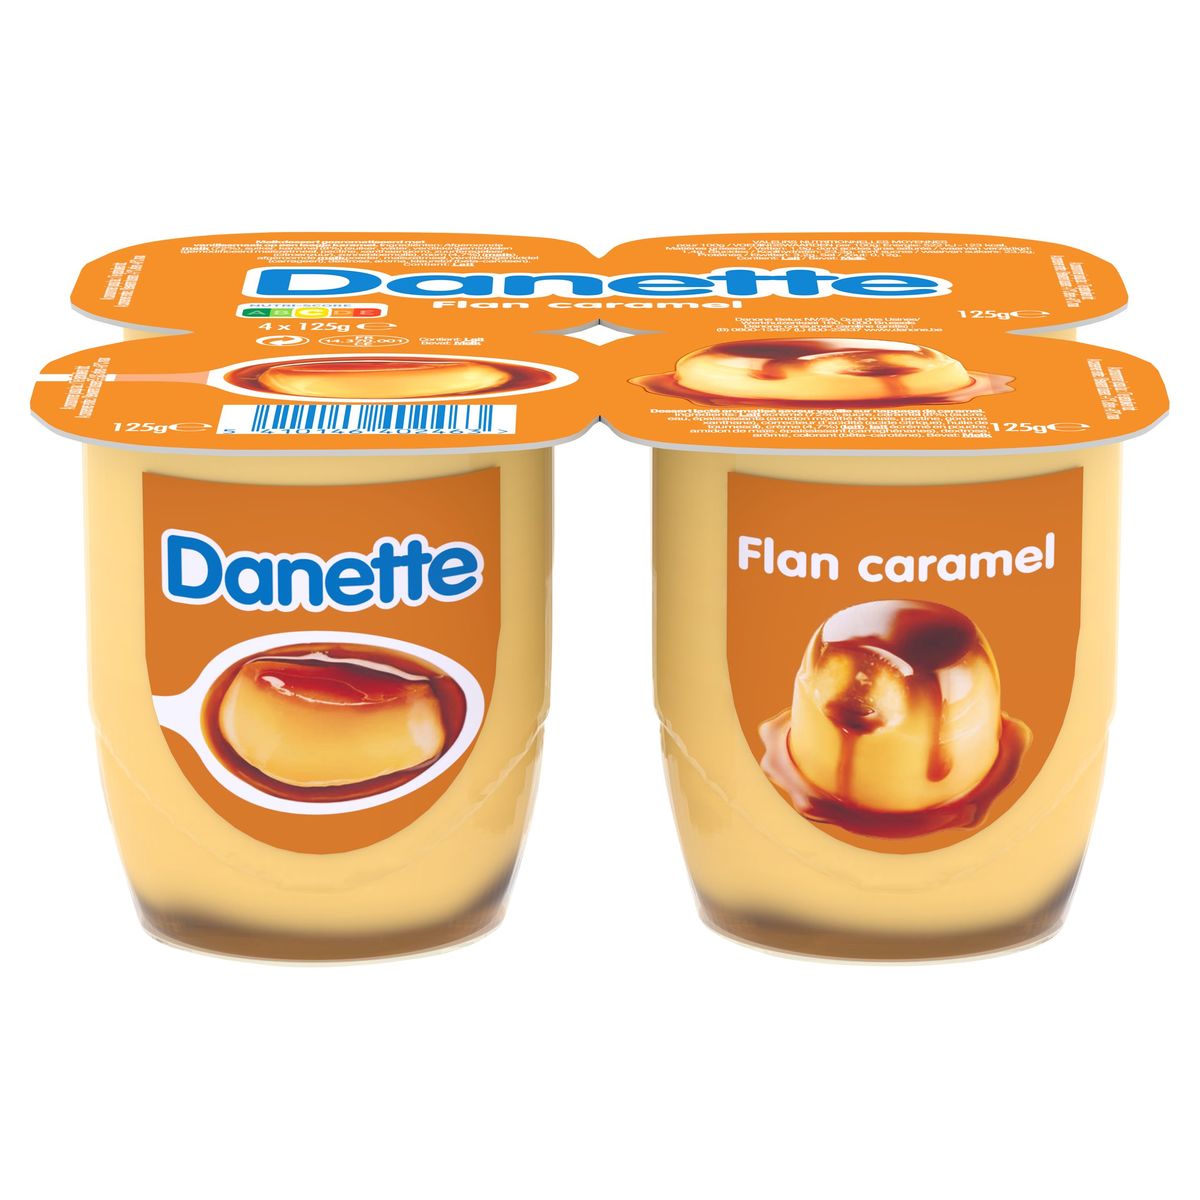 Danette Crème Caramel 4x125g